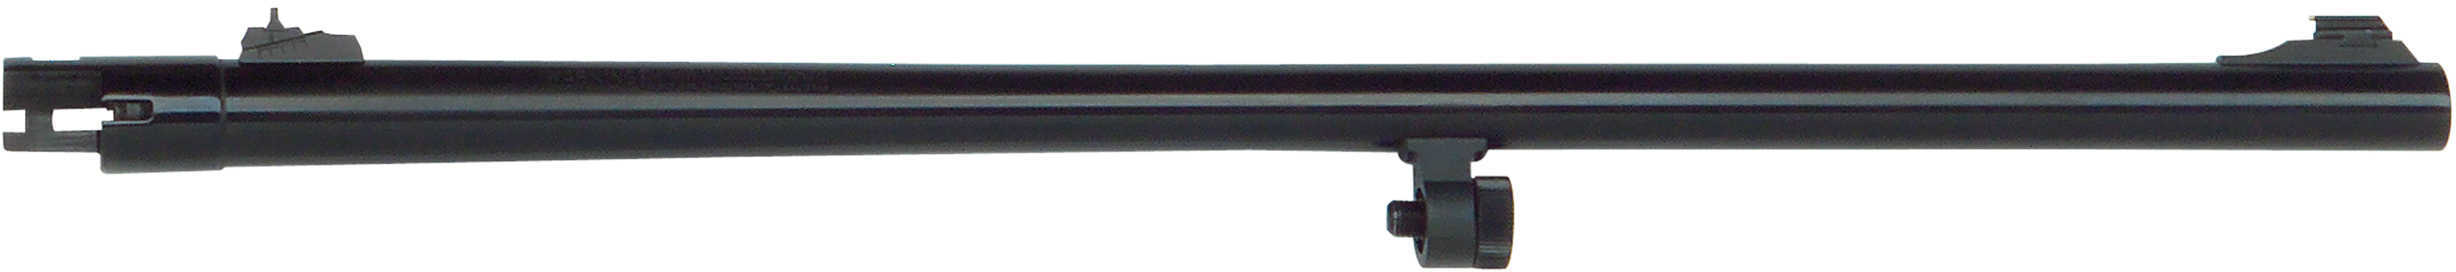 Mossberg 535 12 Gauge 24" Blued Adjustable Rifle